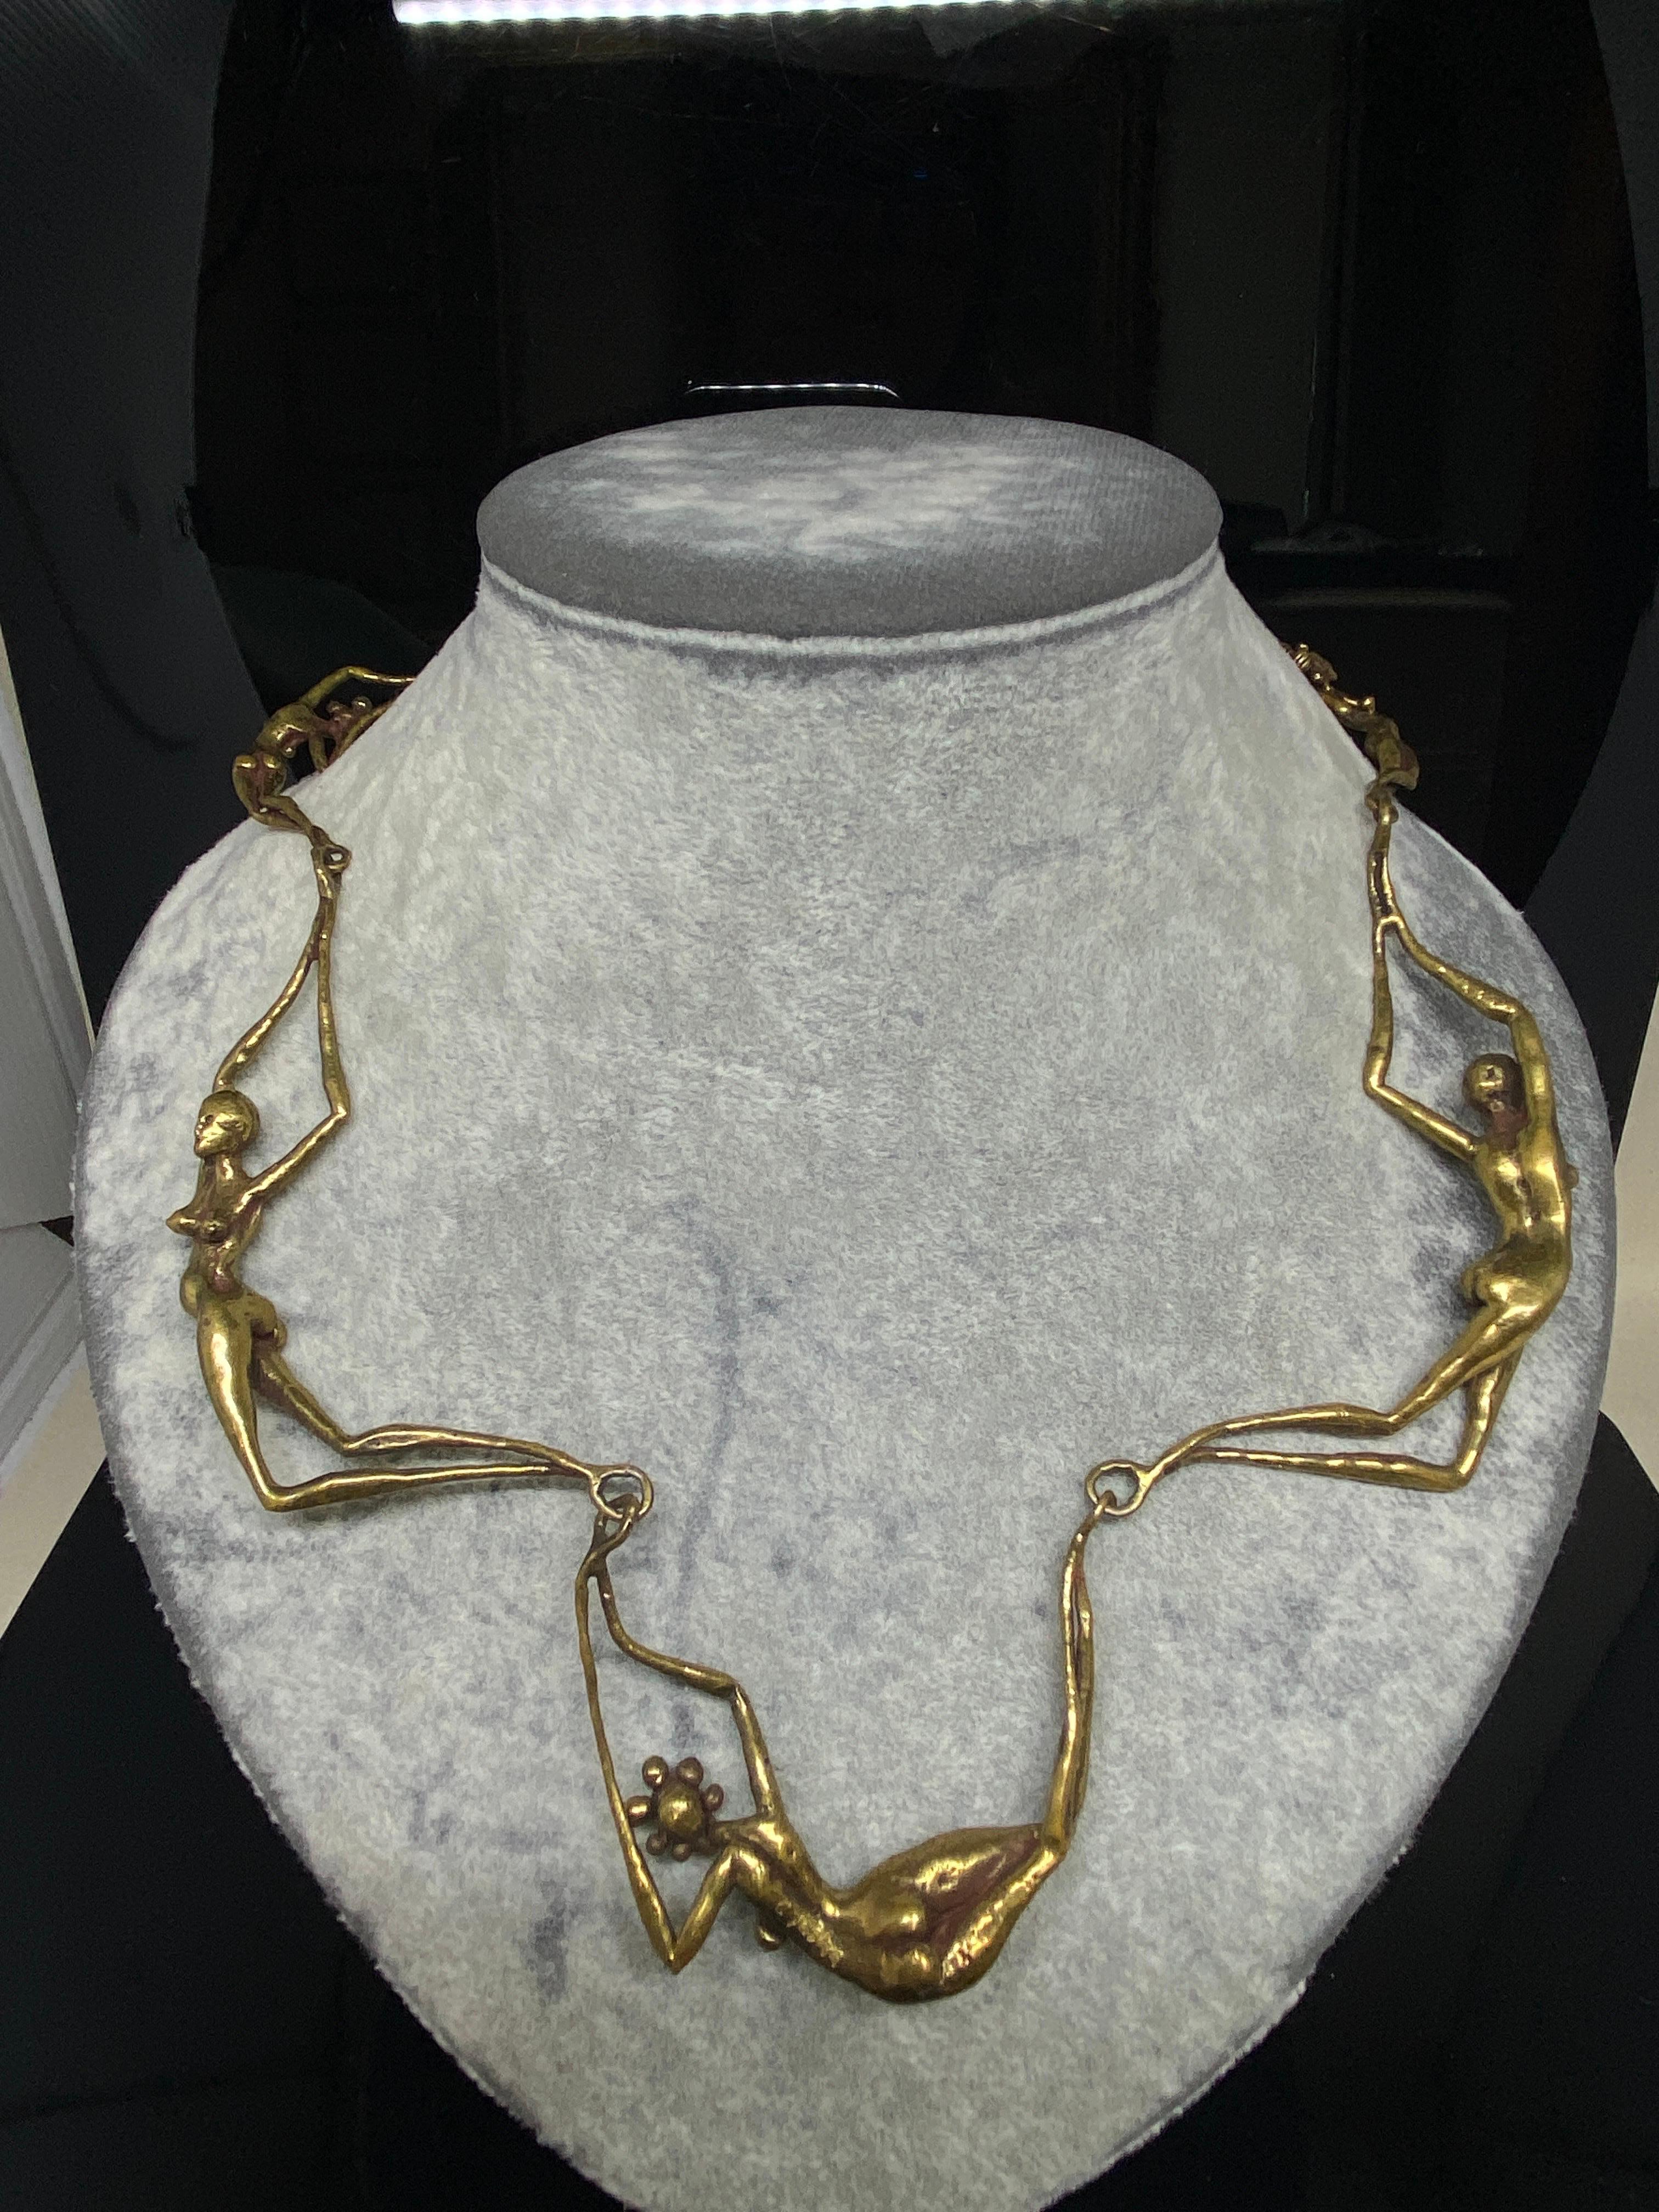 Up&Up vous propose ce collier inhabituel de Carl Tasha. Cet artiste américain très connu a été l'un des pionniers du mouvement brutaliste dans les années 1960 et 1970. 

Collier moderniste capitonnant composé de figures féminines nues surréalistes